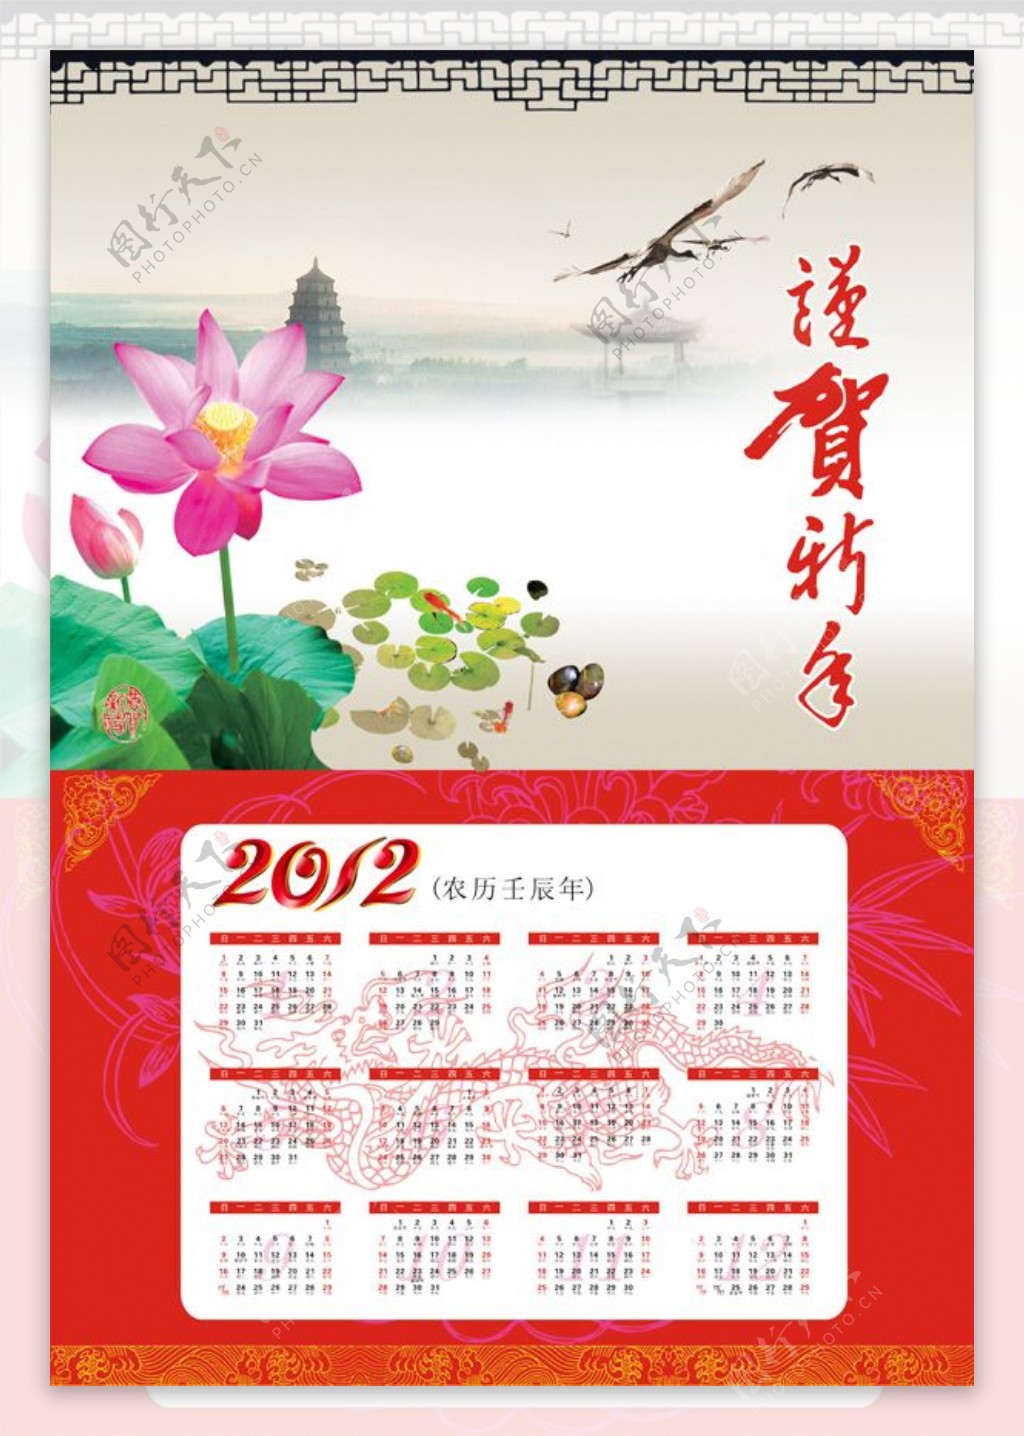 2012恭贺新年中国风挂历矢量素